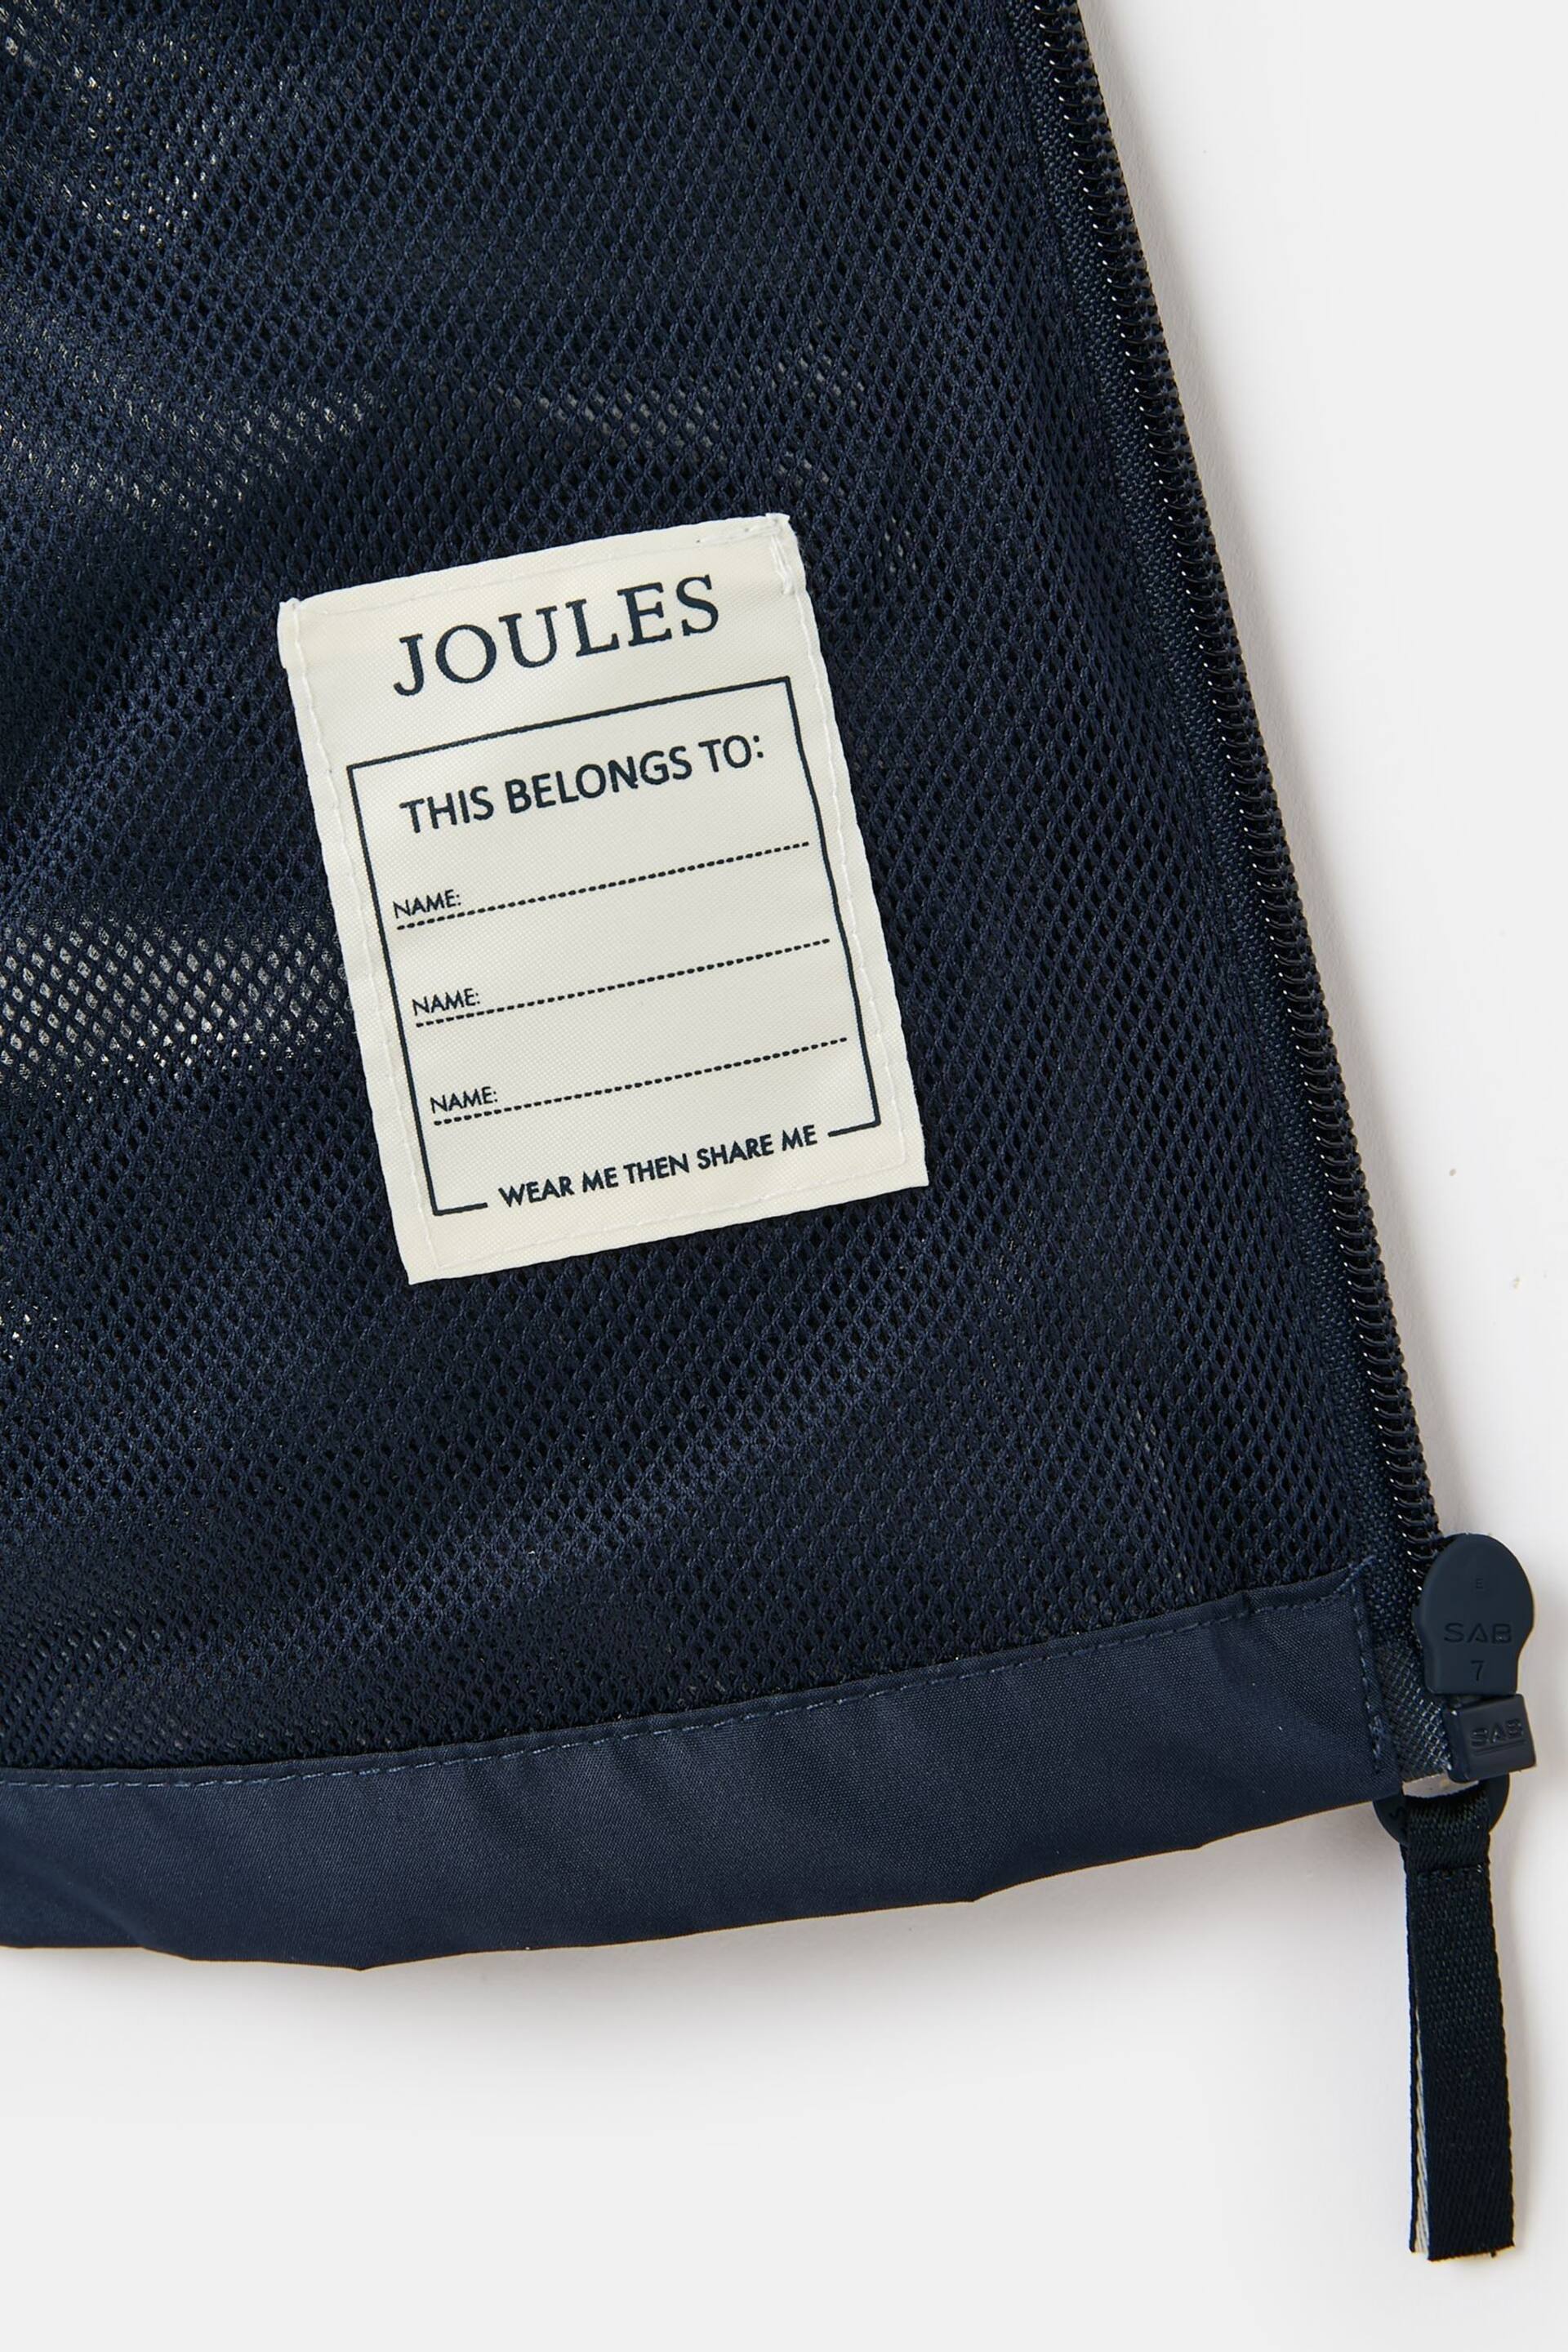 Joules Rainwell Navy Blue Waterproof Packable Raincoat With Hood - Image 4 of 5